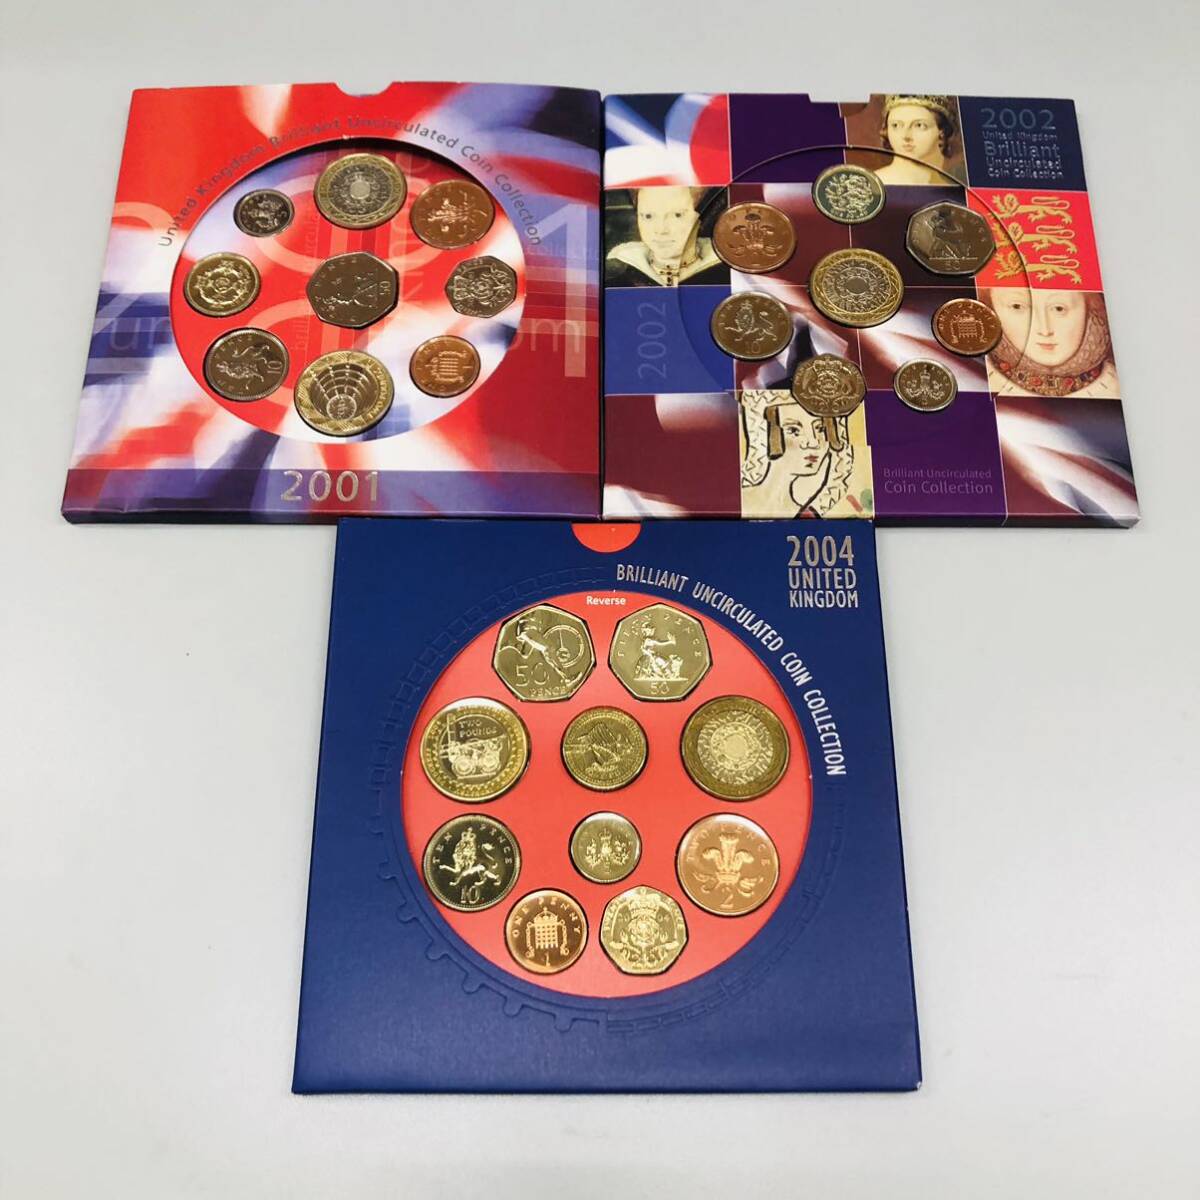 お買い得 イギリス ロイヤルミント ミントセット 2001年 2002年 2004年 3点セット 記念硬貨 コインセット 世界のコイン コレクションの画像1